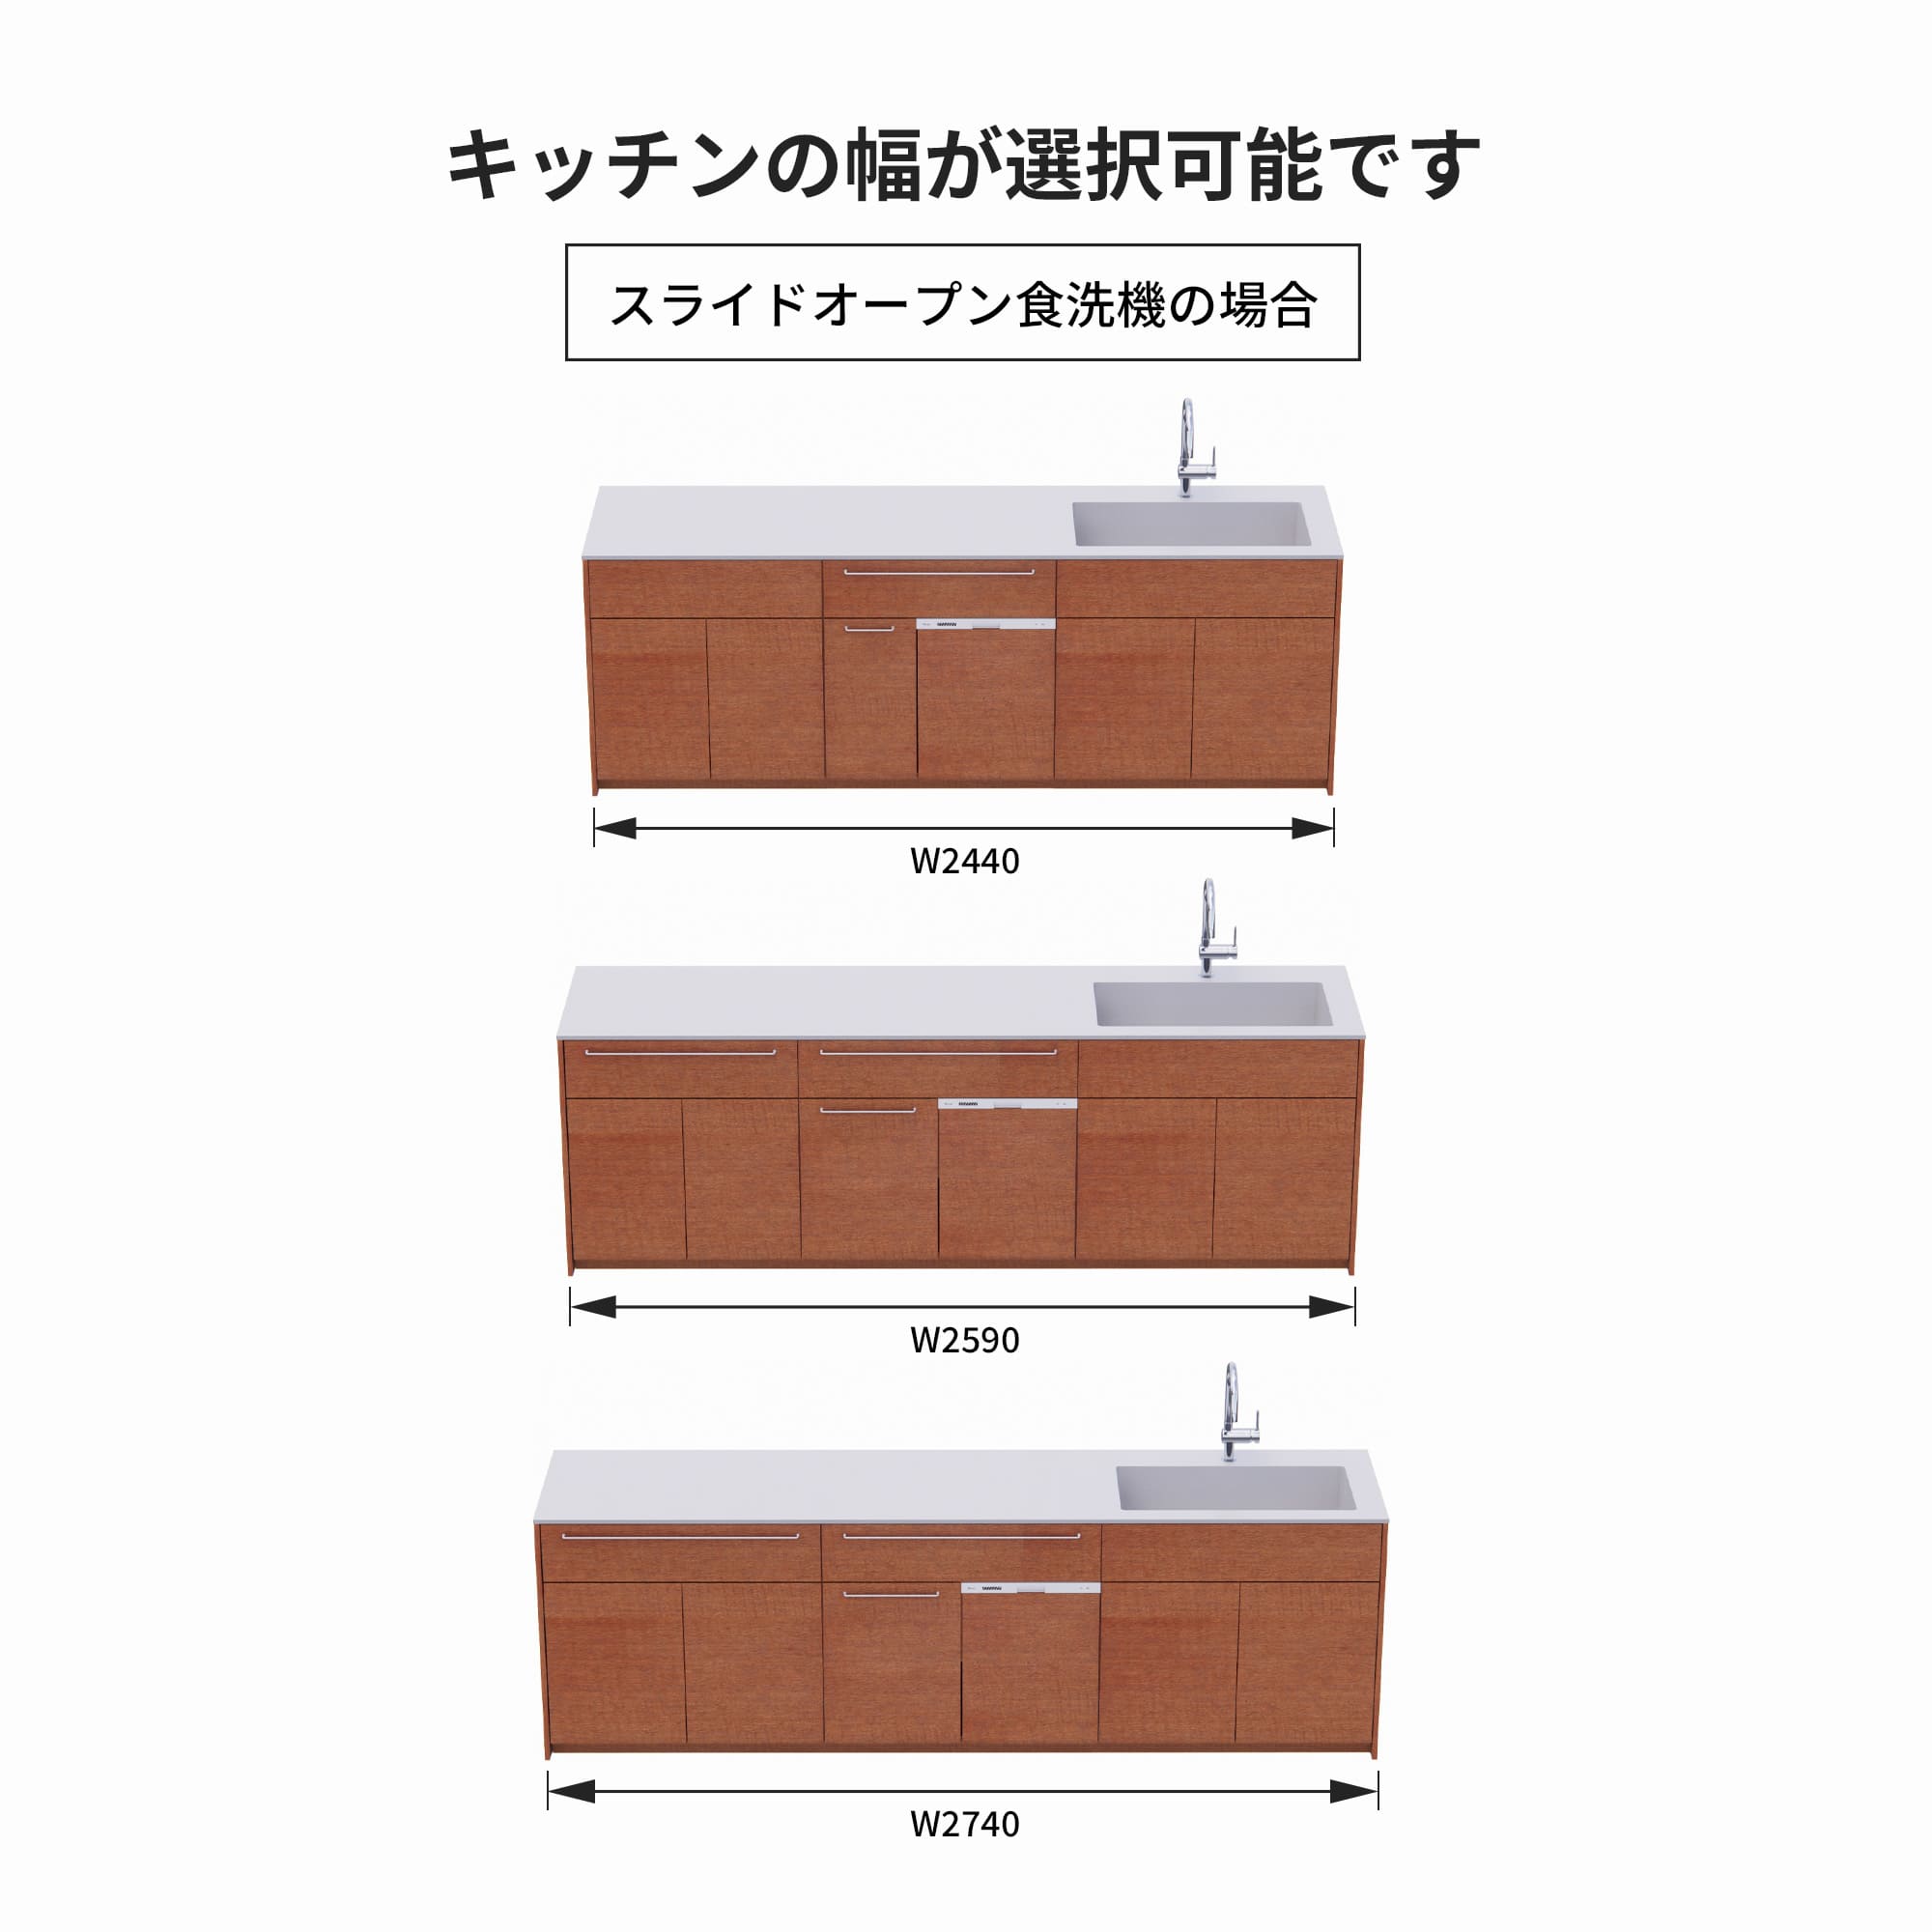 木製システムキッチン 対面型 W2440～2740・コンロなし / オーブンなし / 食洗機あり KB-KC022-45-G183 スライドオープンの場合